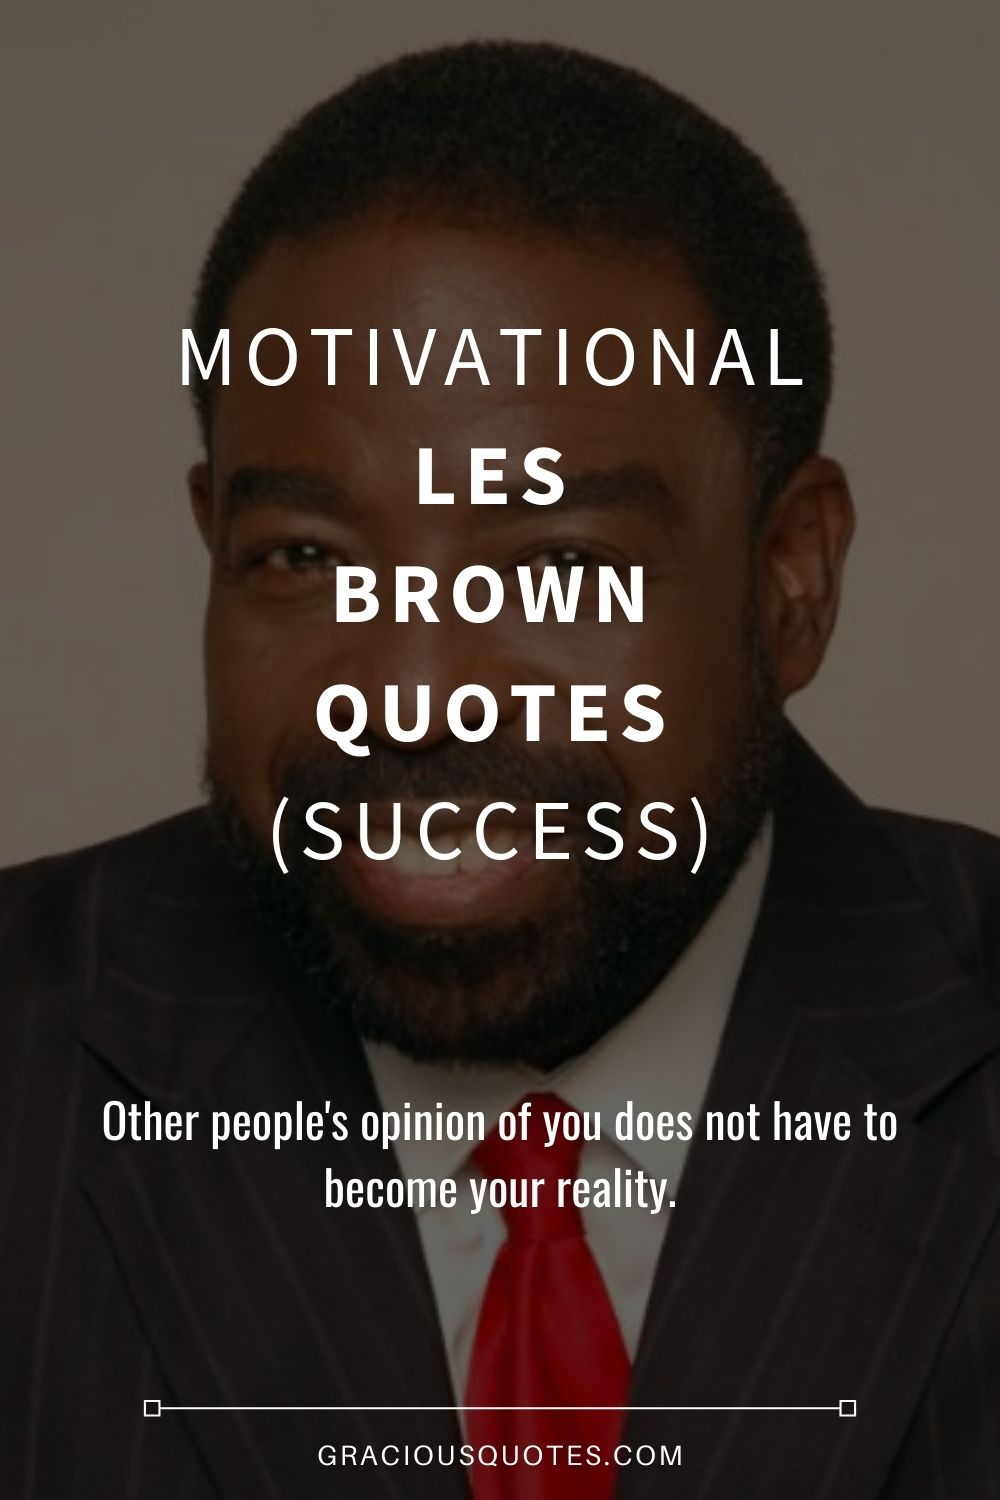 Motivational Les Brown Quotes (SUCCESS) - Gracious Quotes